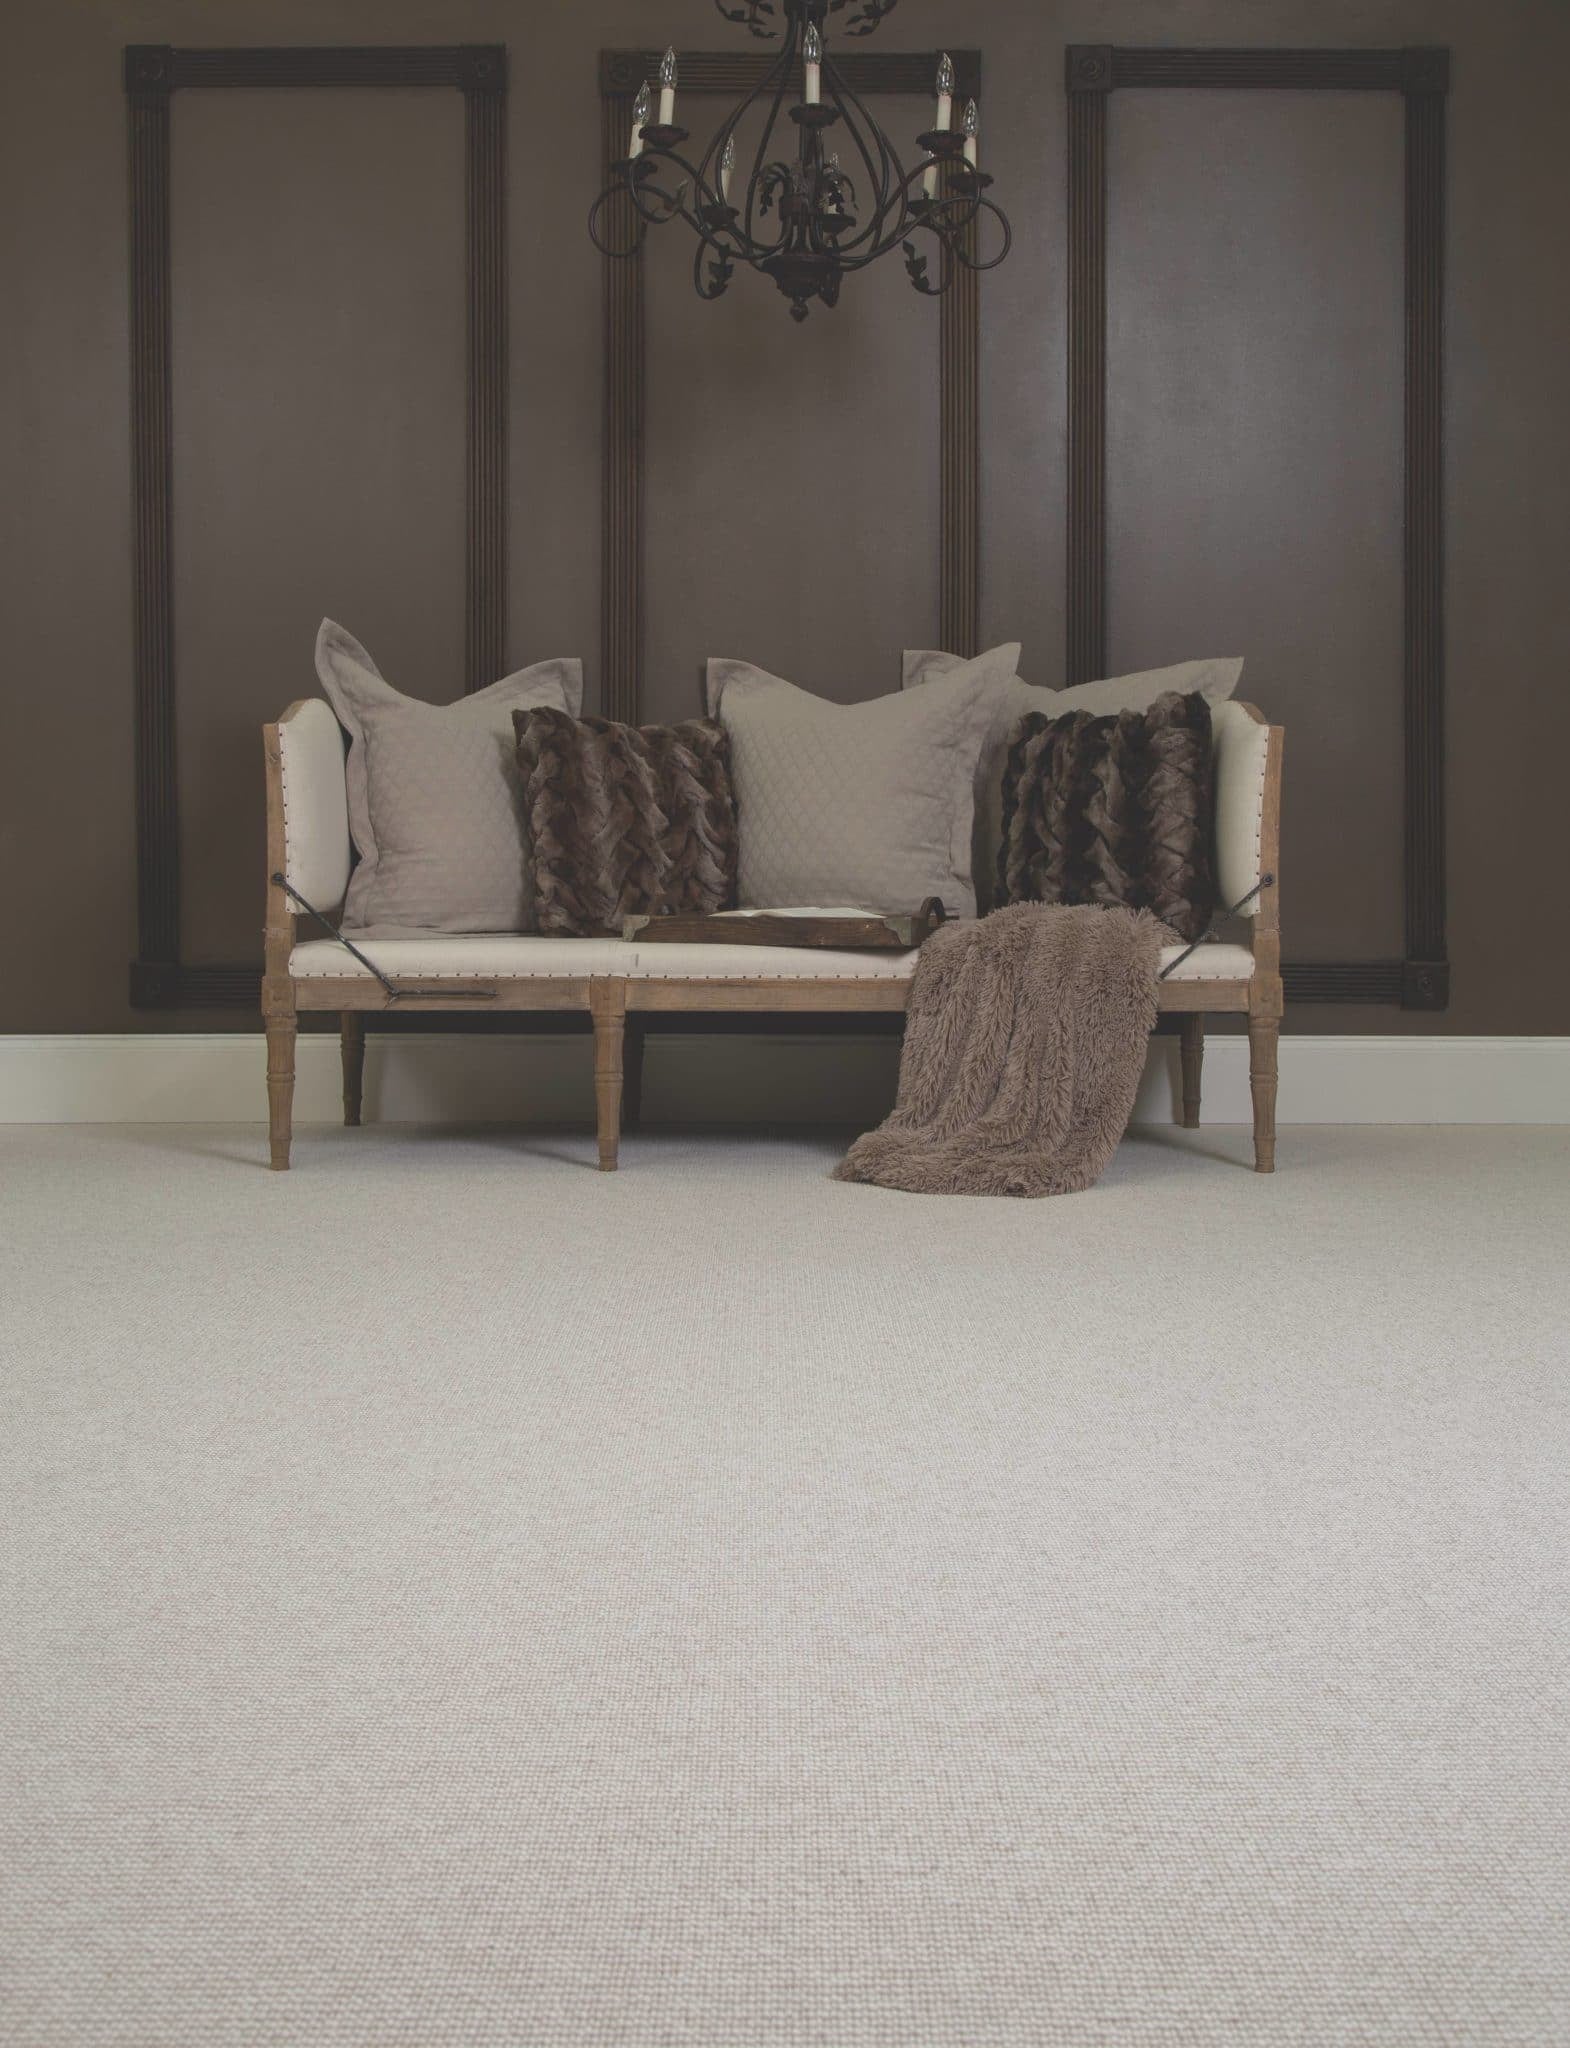 Hastings Kingston Hill Berber Carpet on Living Room Floor